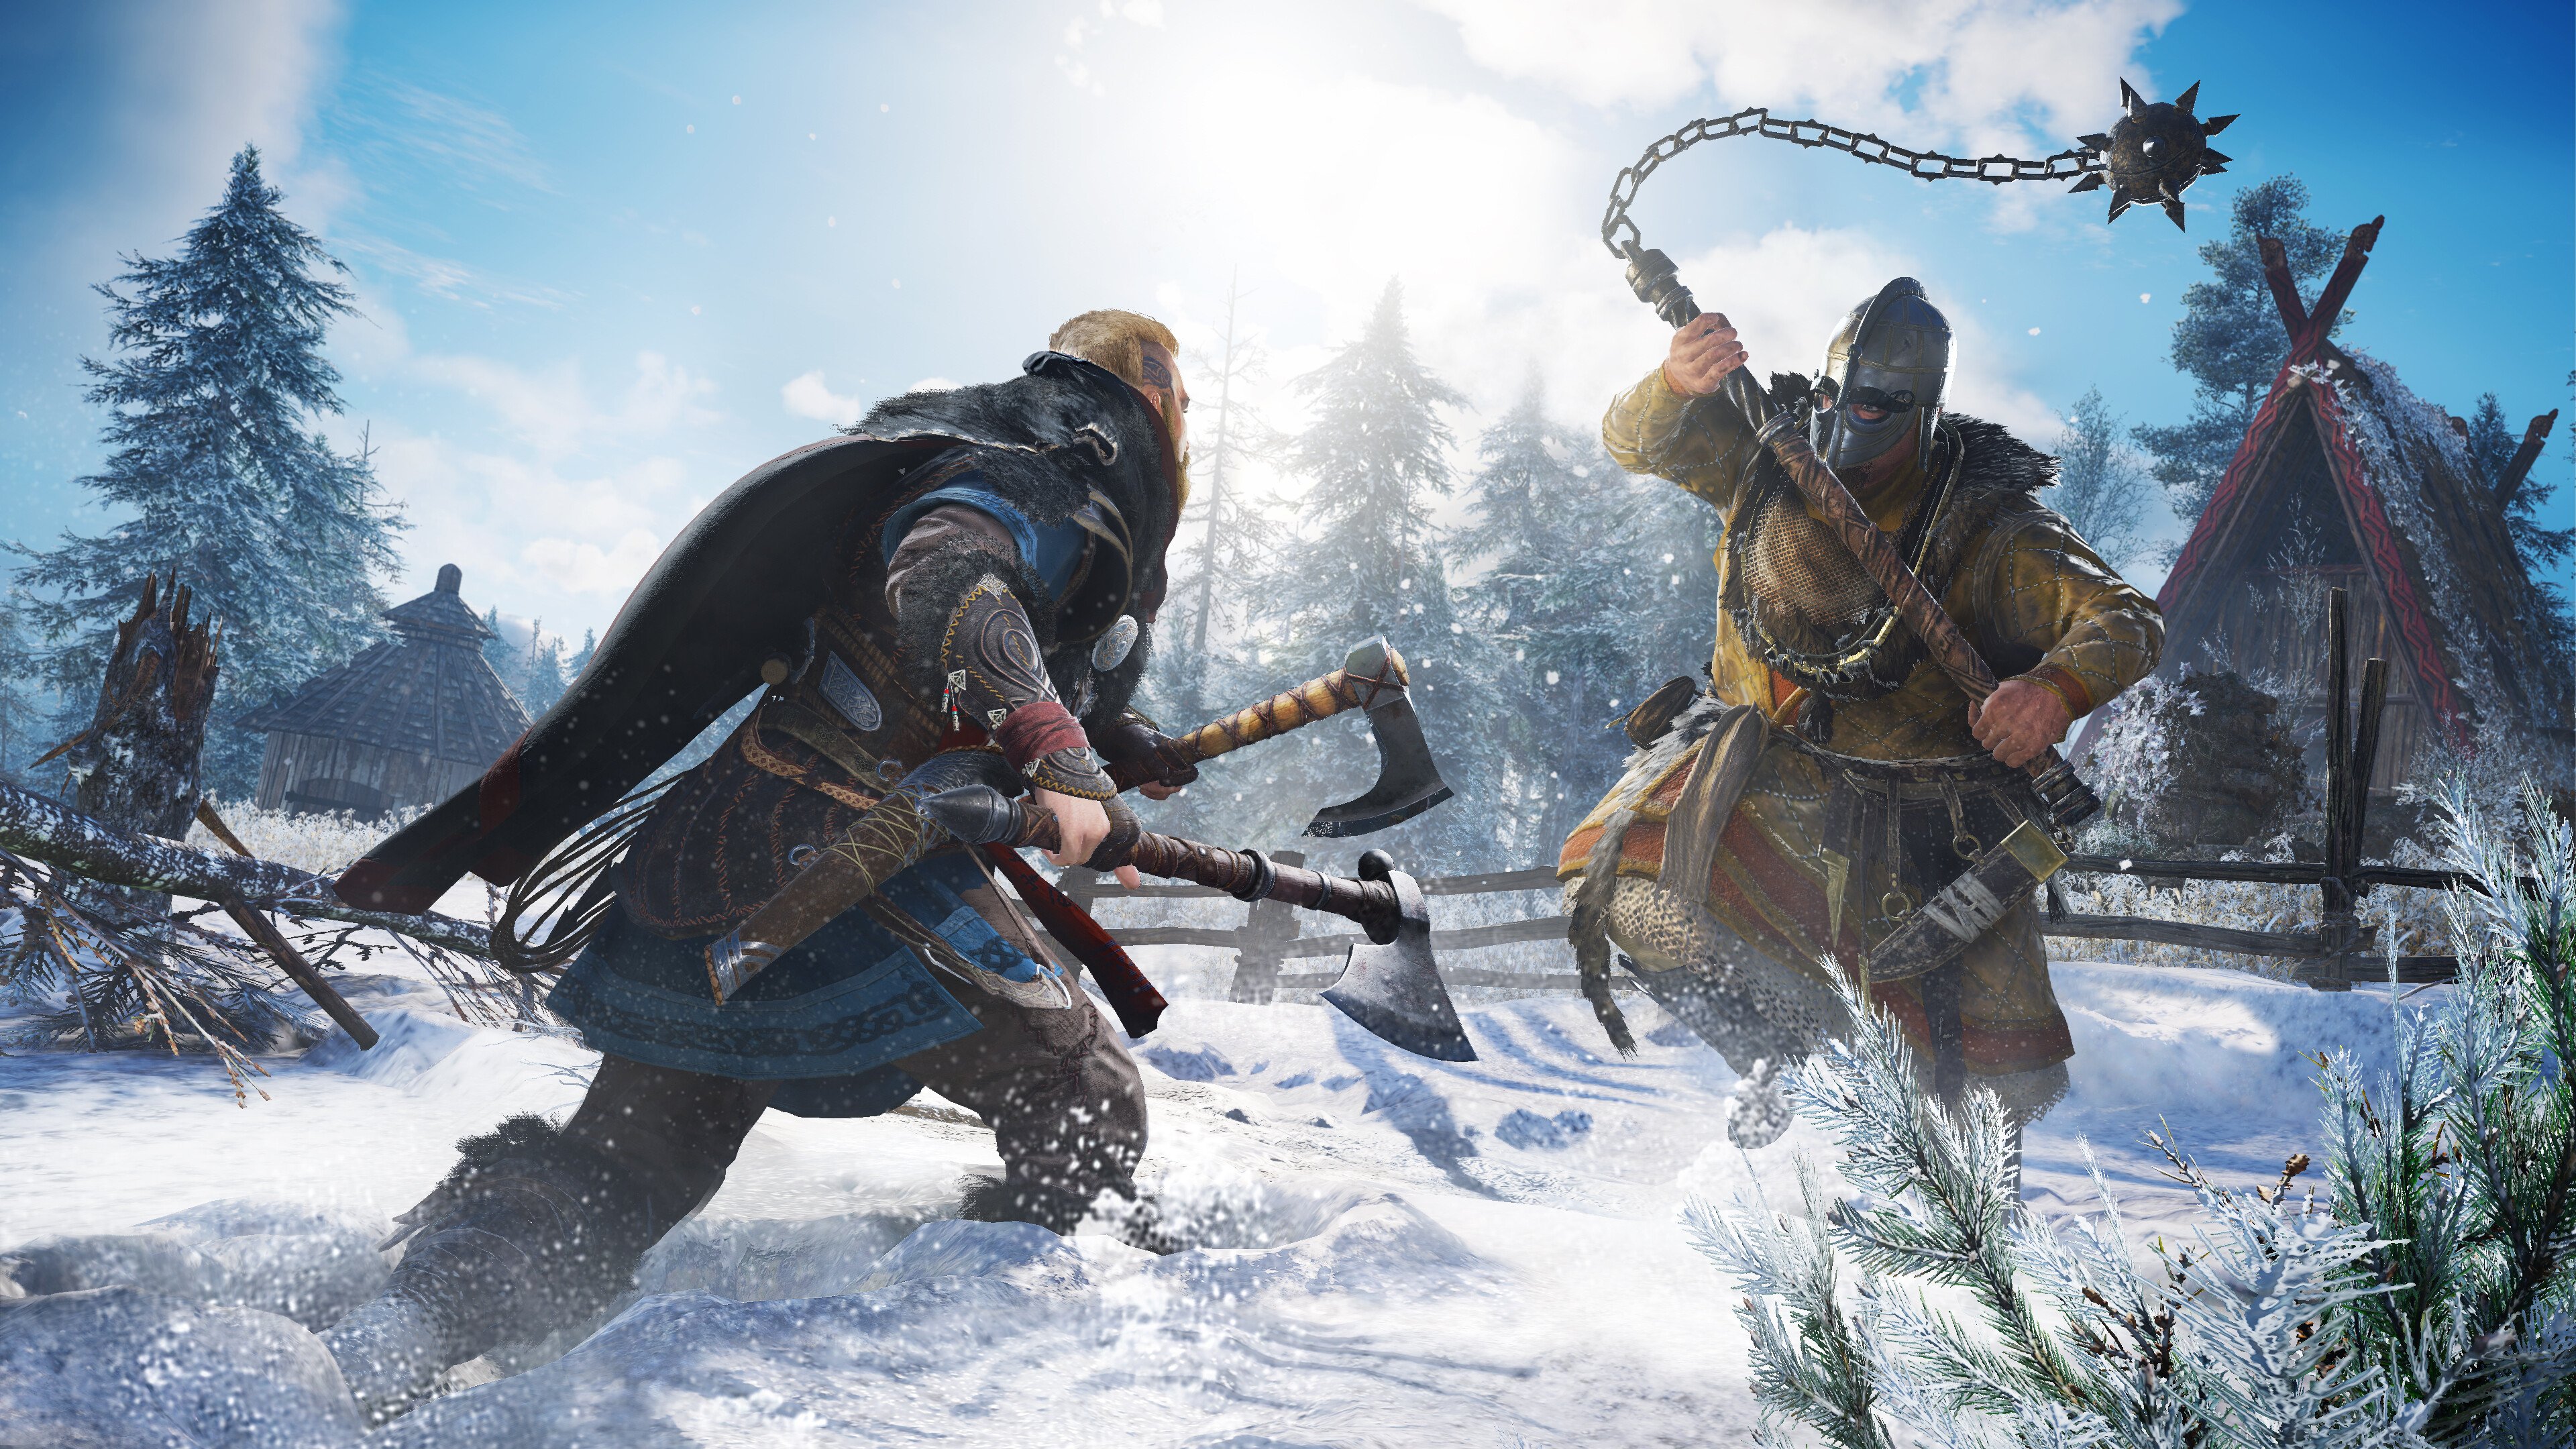 Assassin's Creed: conheça os personagens principais da saga